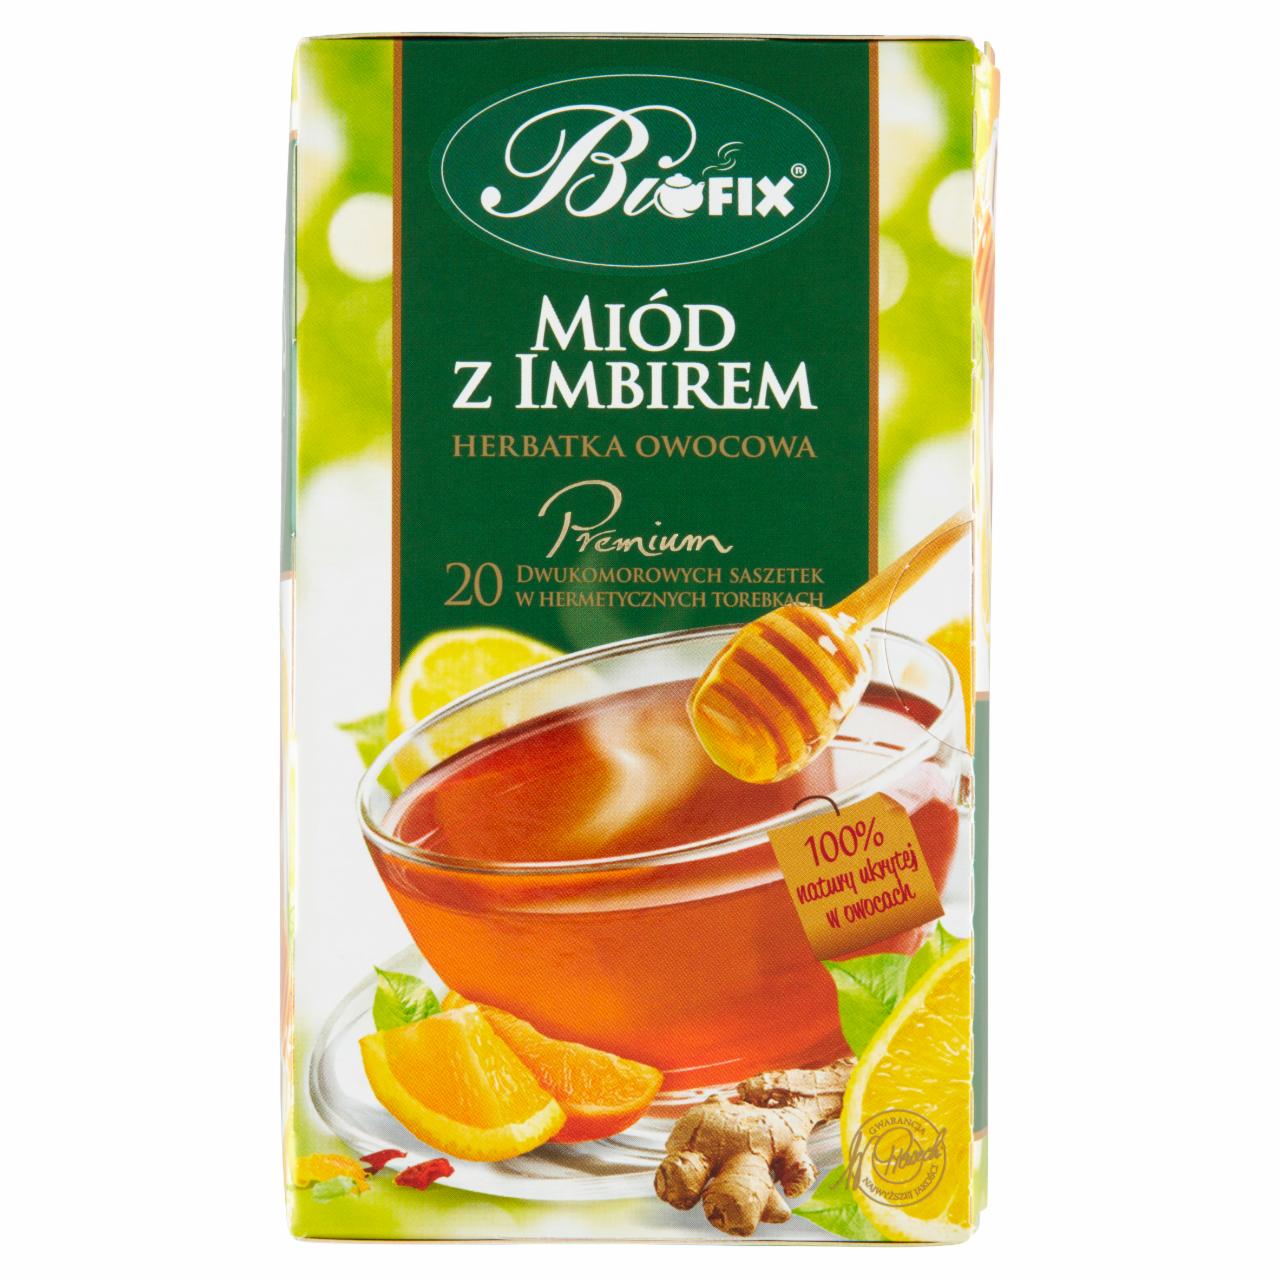 Zdjęcia - Bifix Premium Herbatka owocowa miód z imbirem 40 g (20 x 2 g)